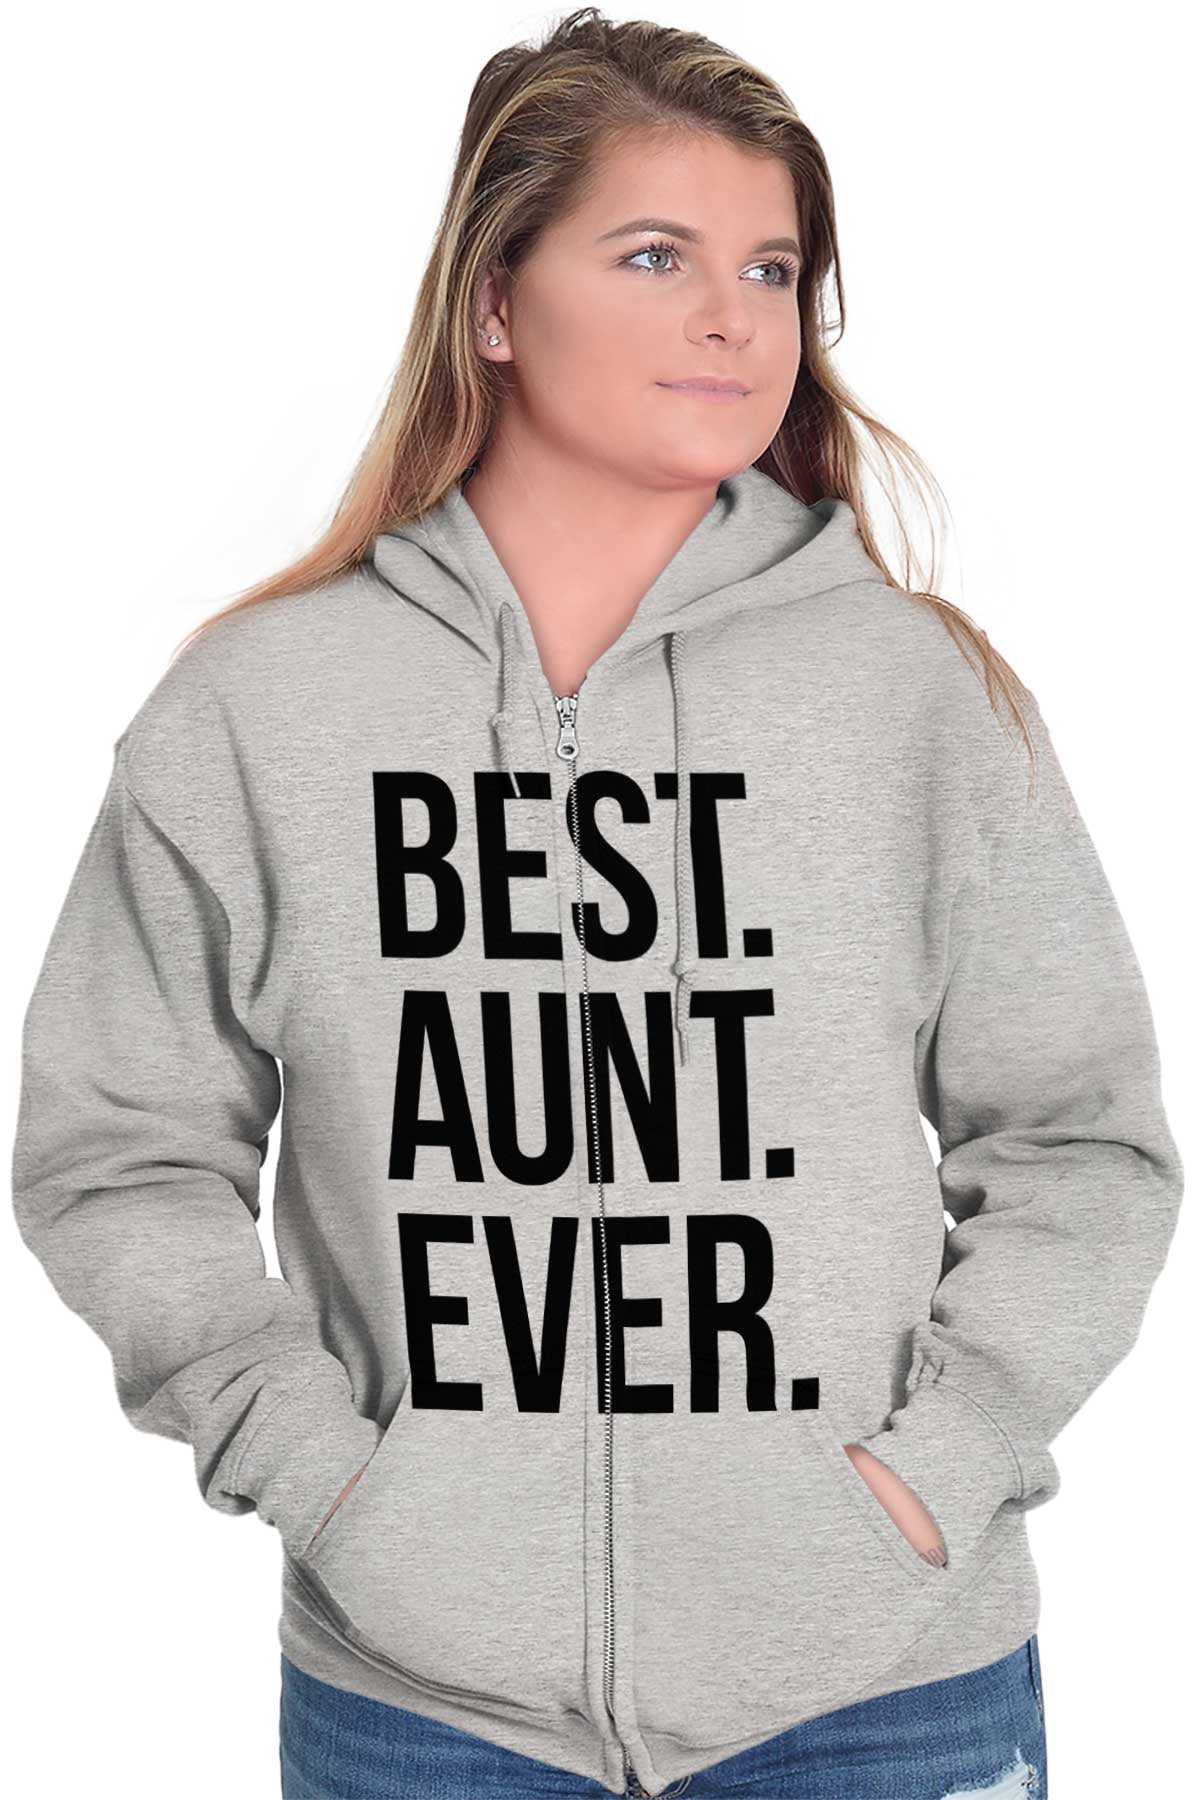 Best Aunt Ever Cute Favorite Auntie Zip Hoodie Sweatshirt Women Brisco  Brands 5X 